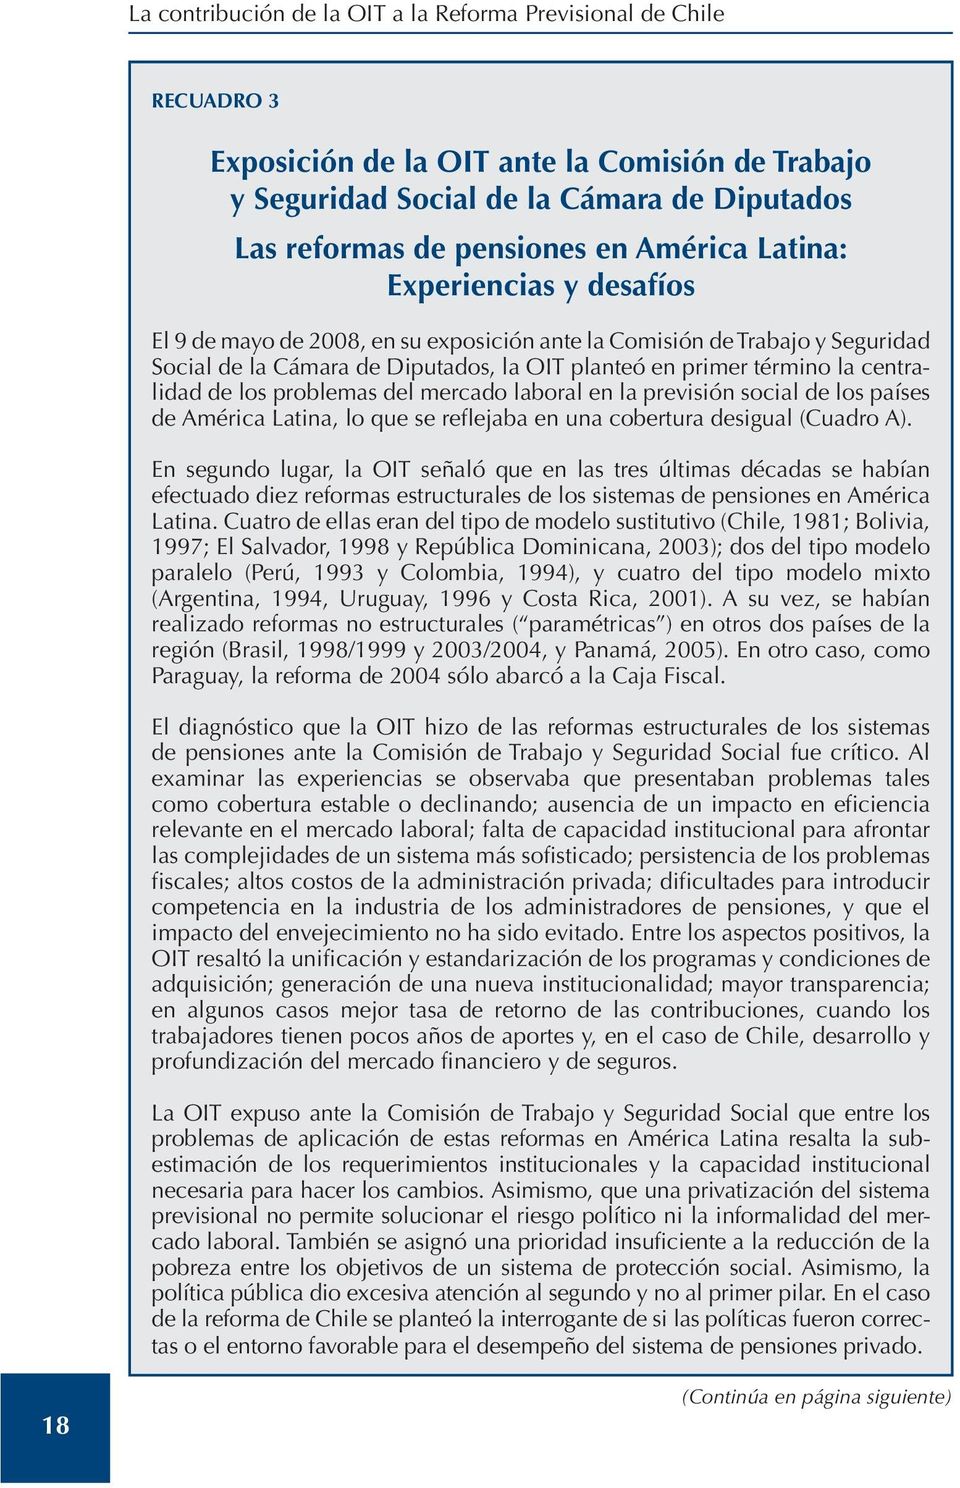 centralidad de los problemas del mercado laboral en la previsión social de los países de América Latina, lo que se reflejaba en una cobertura desigual (Cuadro A).